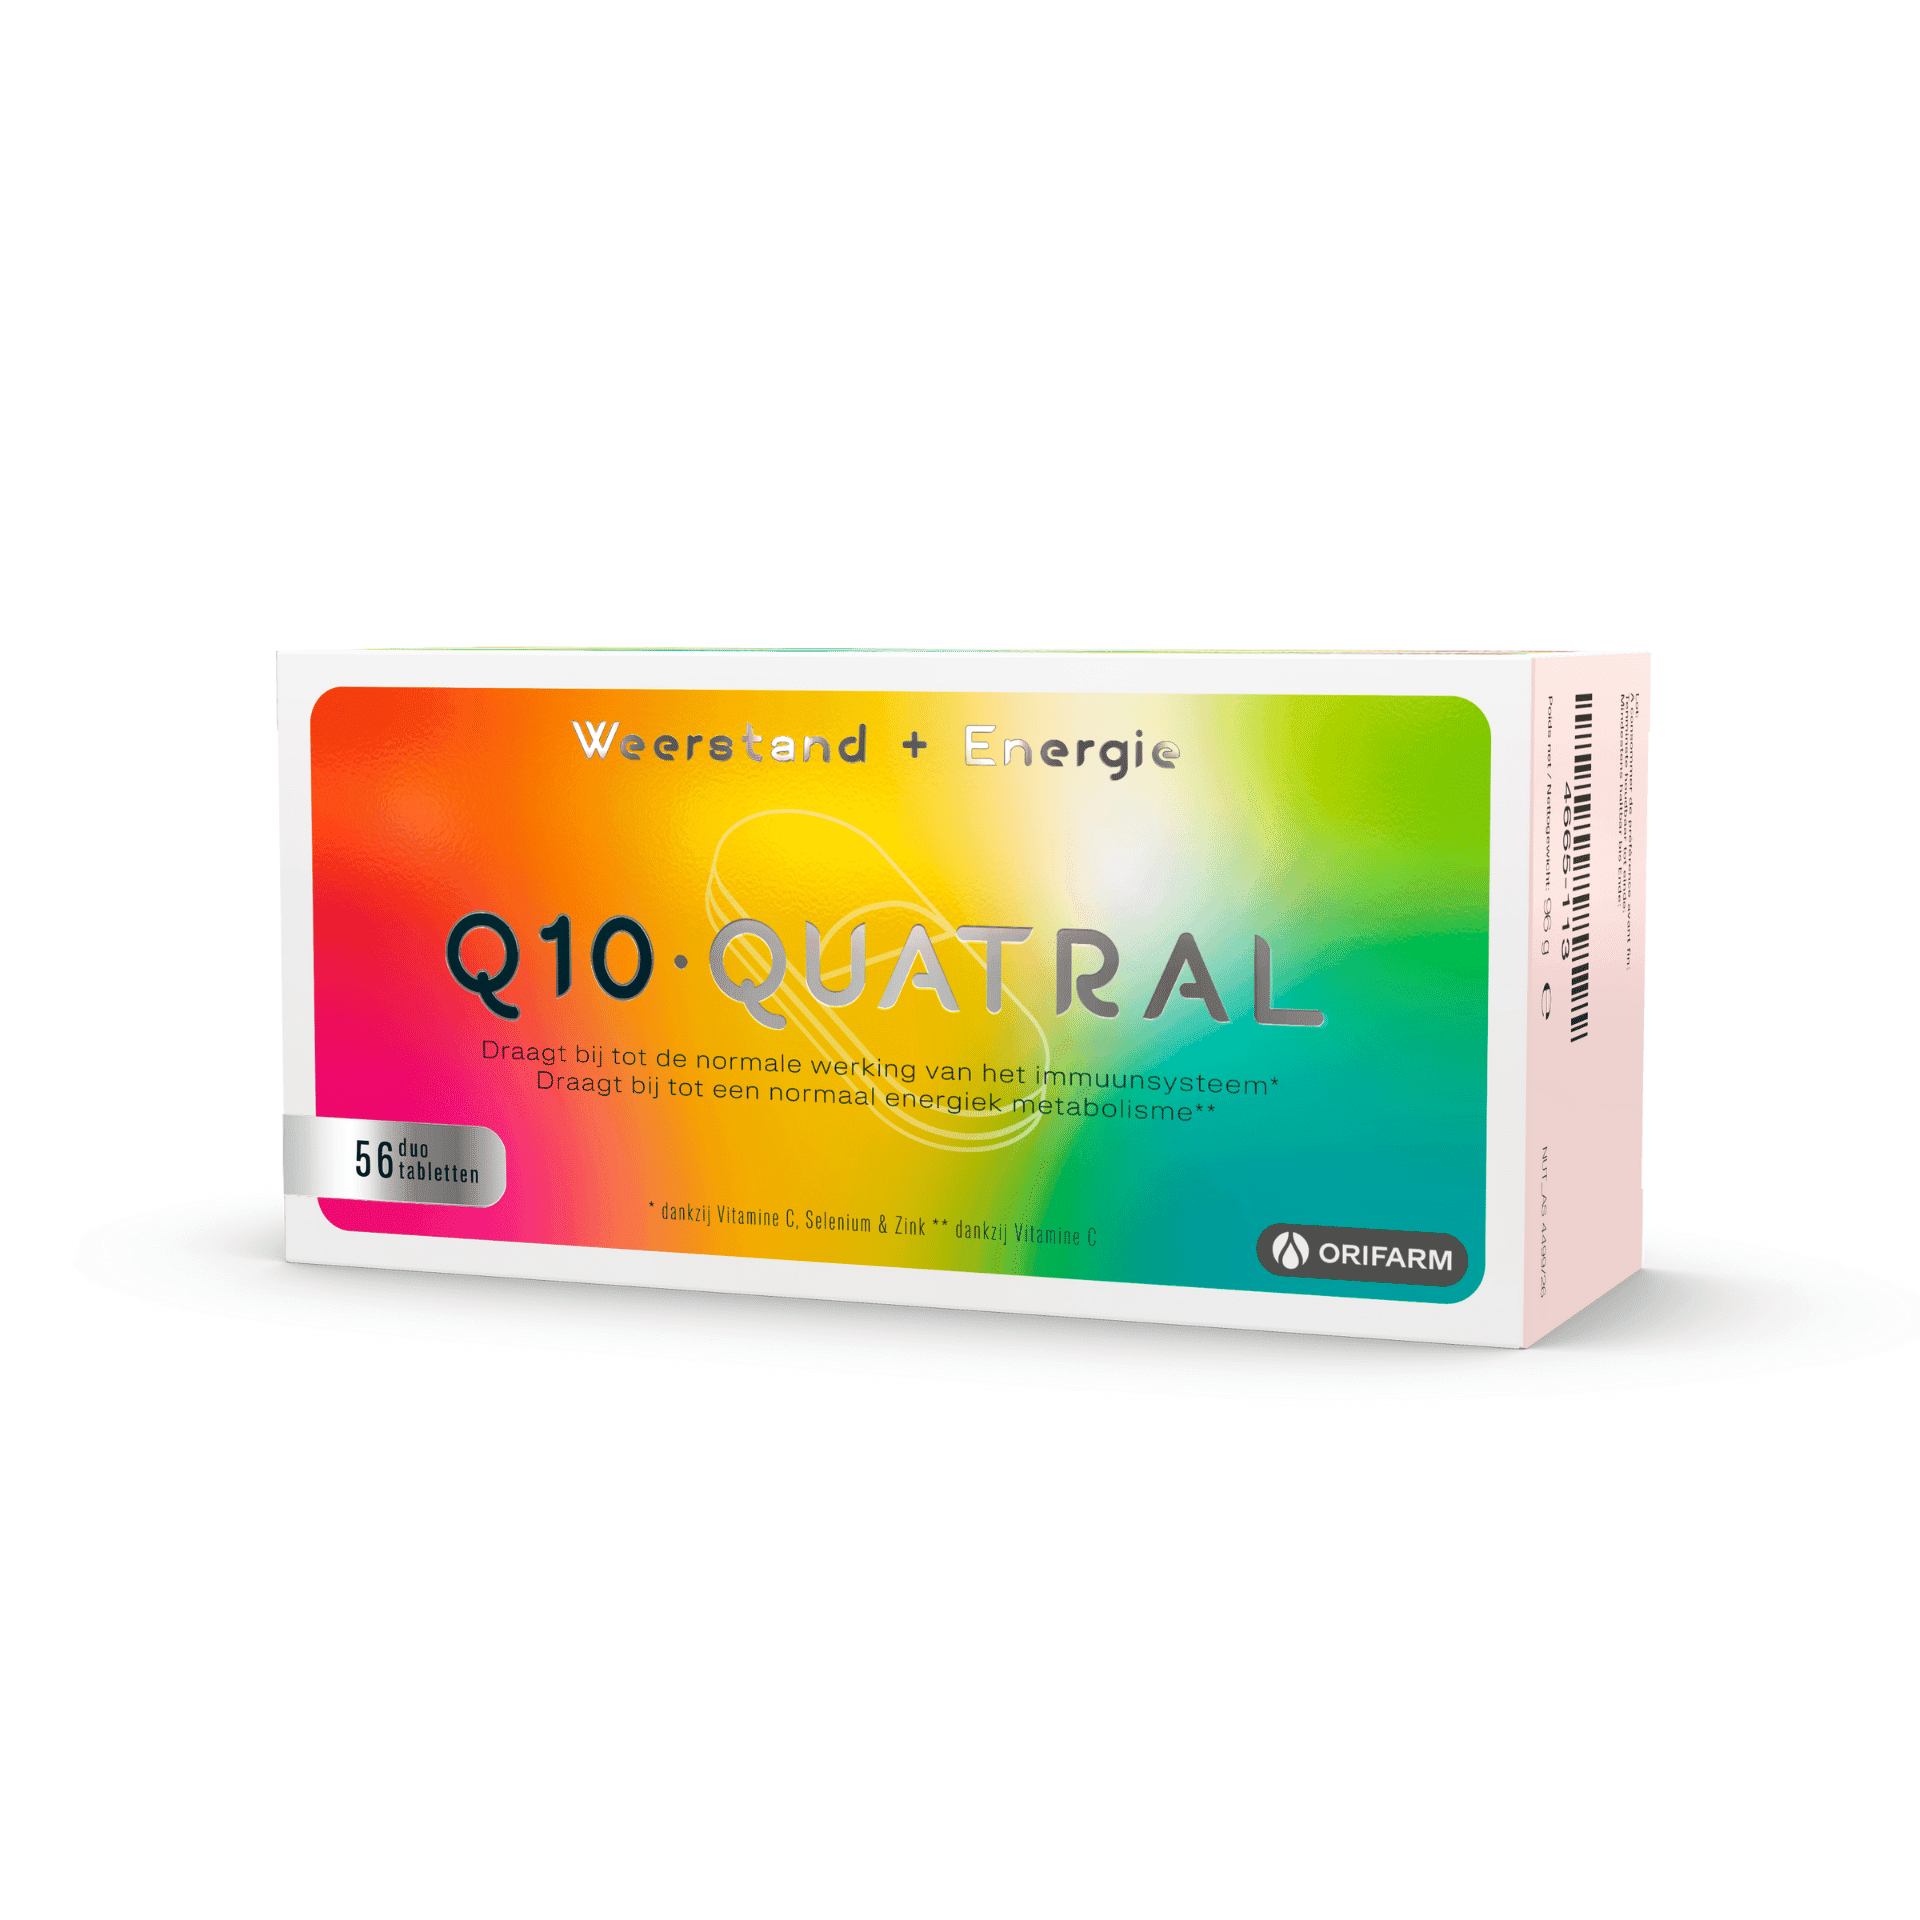 Q10 Quatral